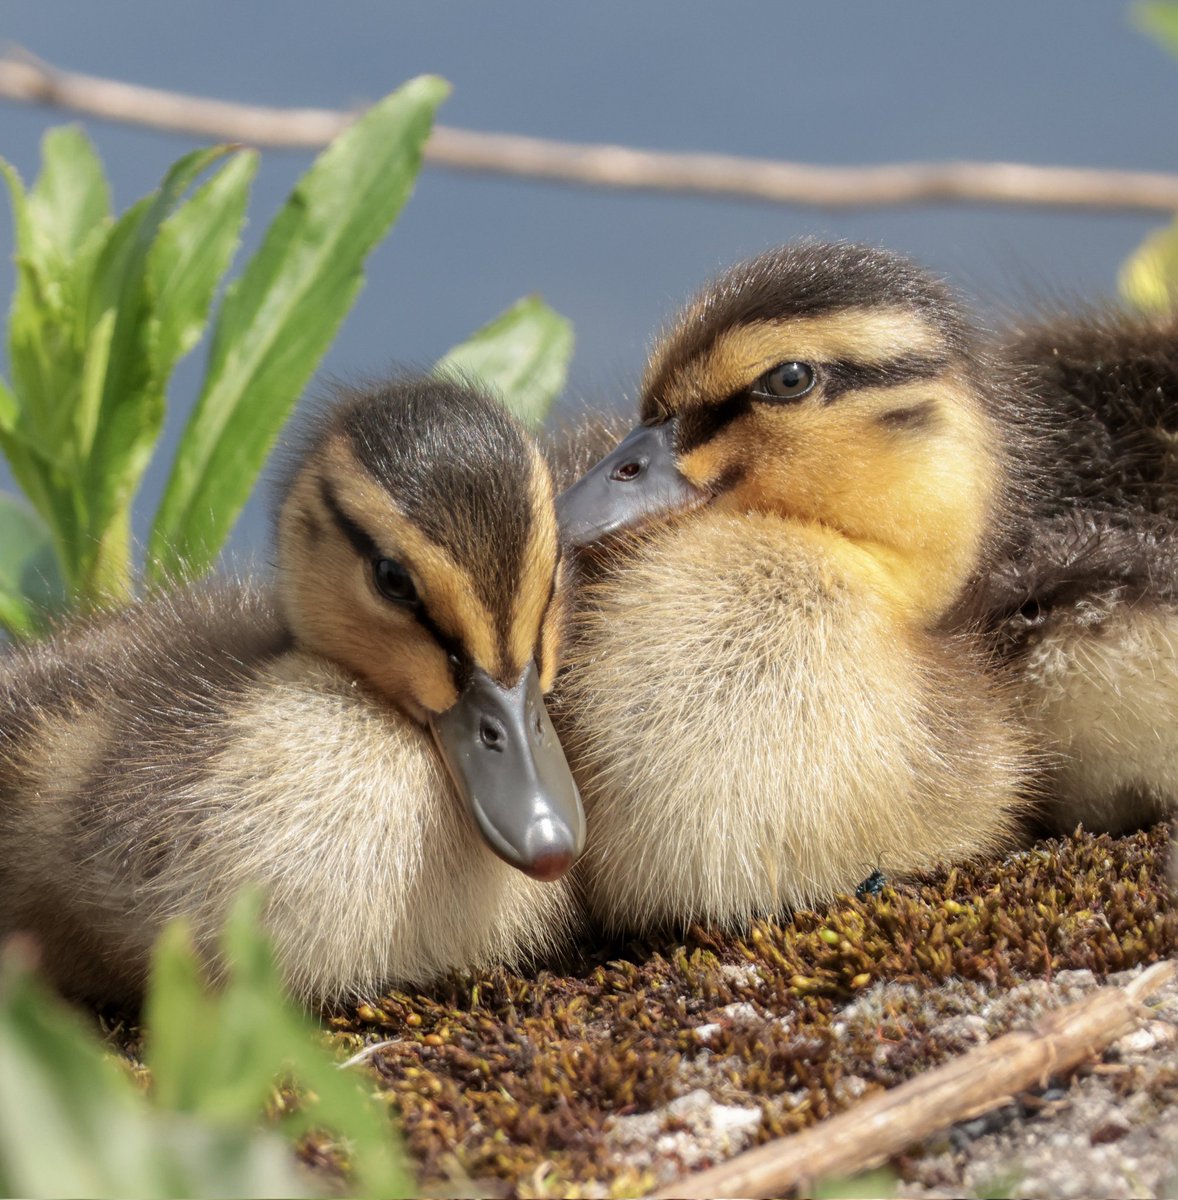 Ducklings!! 😍